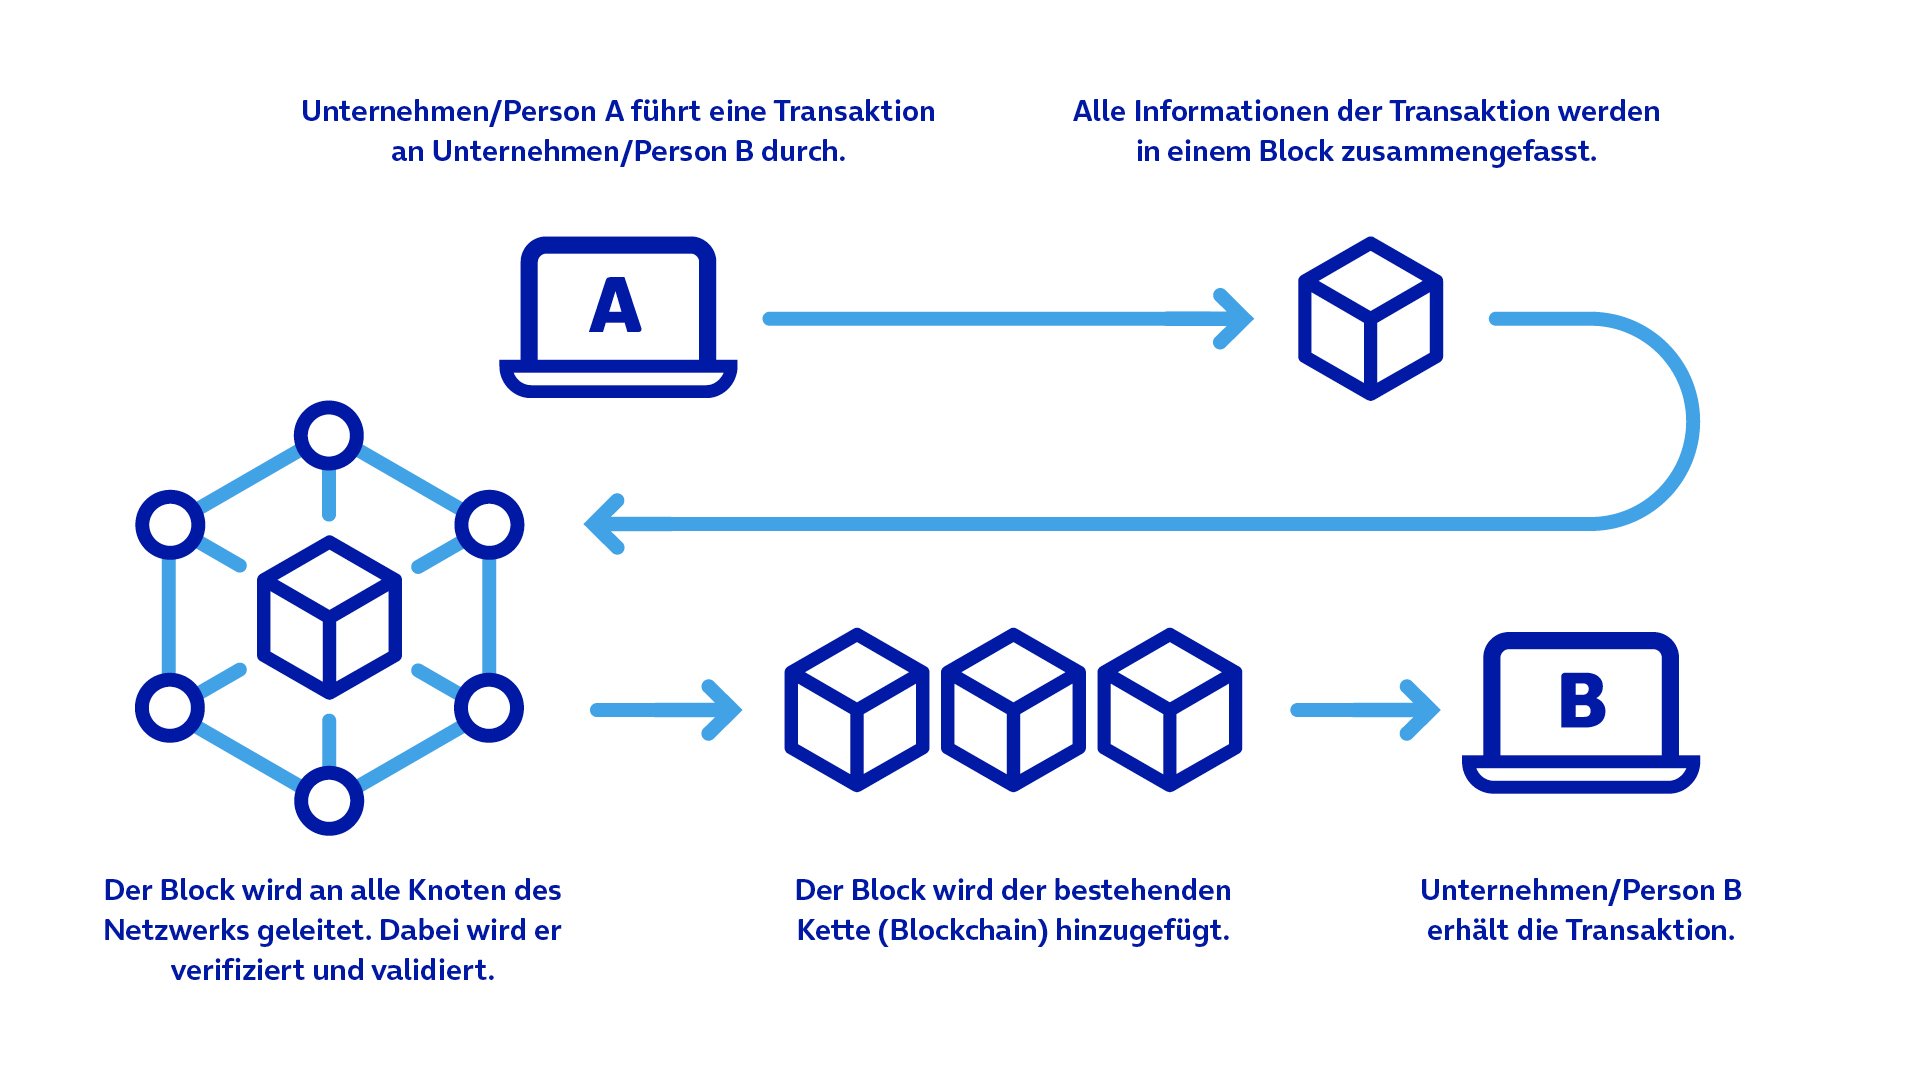 Darstellung des Verfahrens, wie ein Block einer Blockchain hinzugefügt wird.